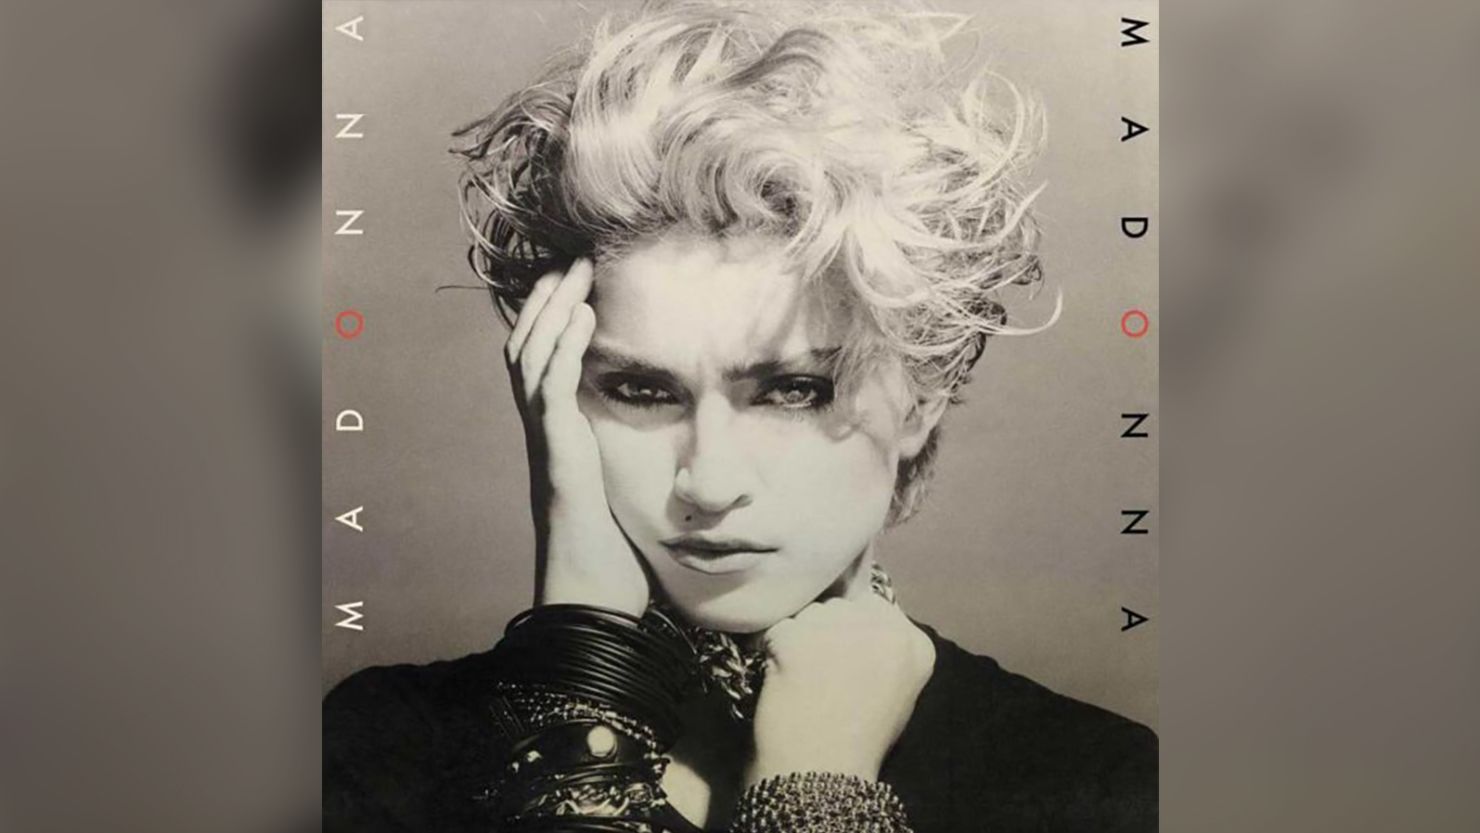 Madonna's debut album "Madonna," released July 27, 1983.